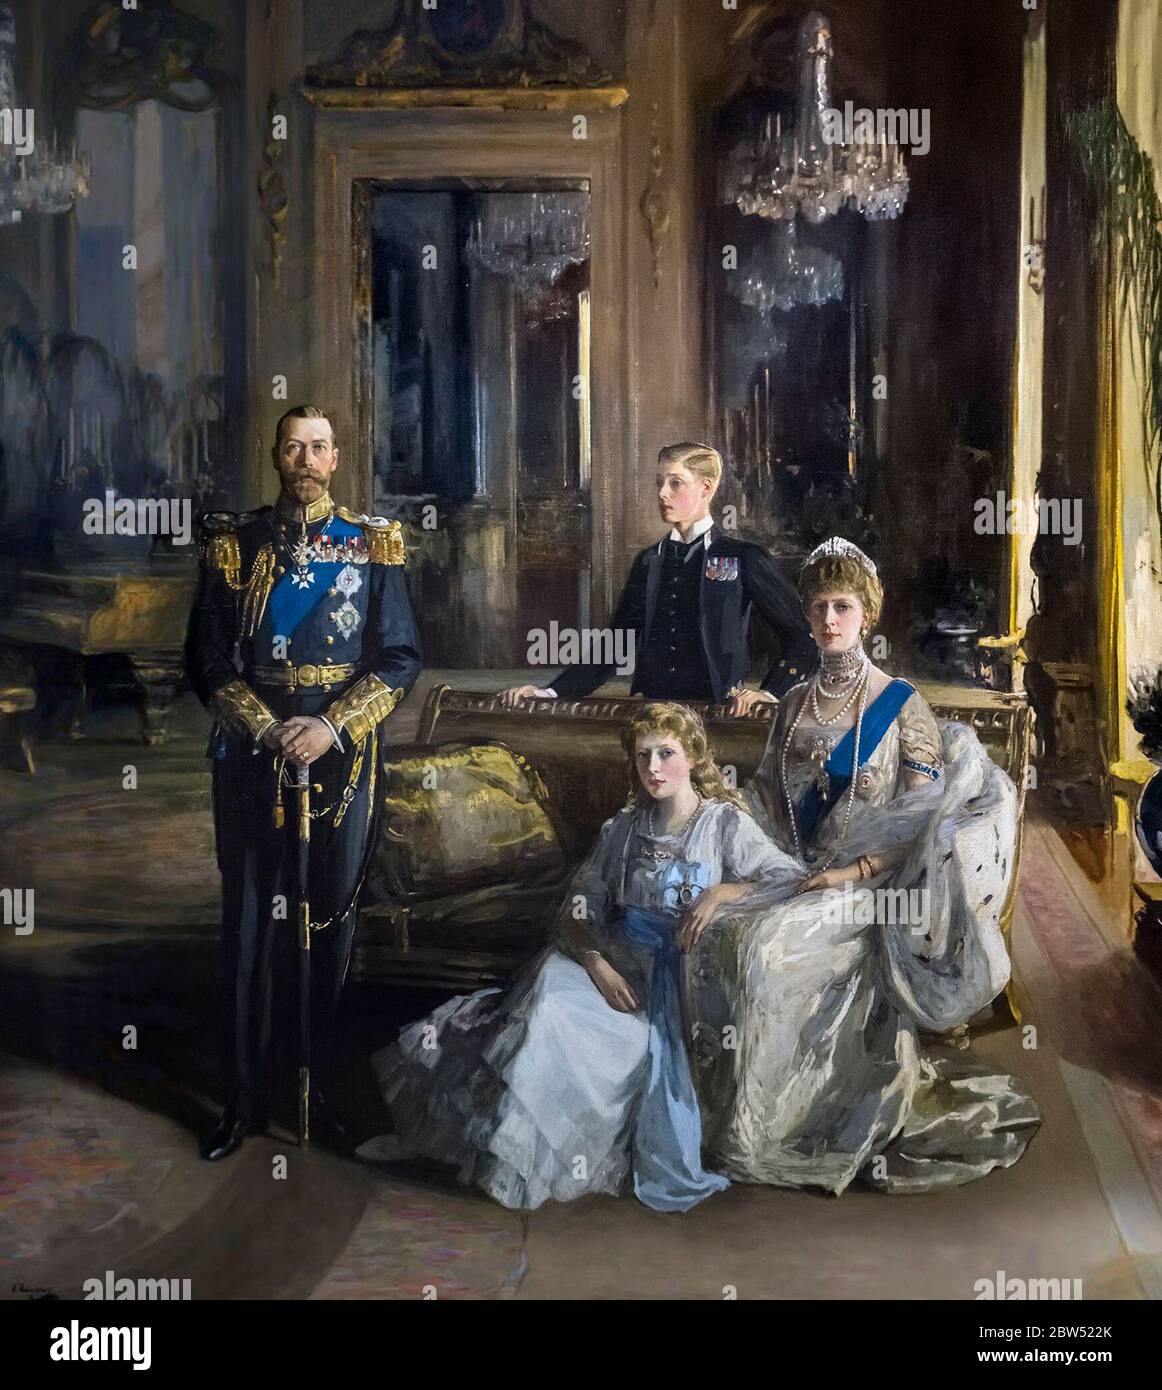 George C. 'la Famille Royale à Buckingham Palace' par Sir John Lavery, huile sur toile, 1913. Portrait du roi George V avec sa famille. Banque D'Images